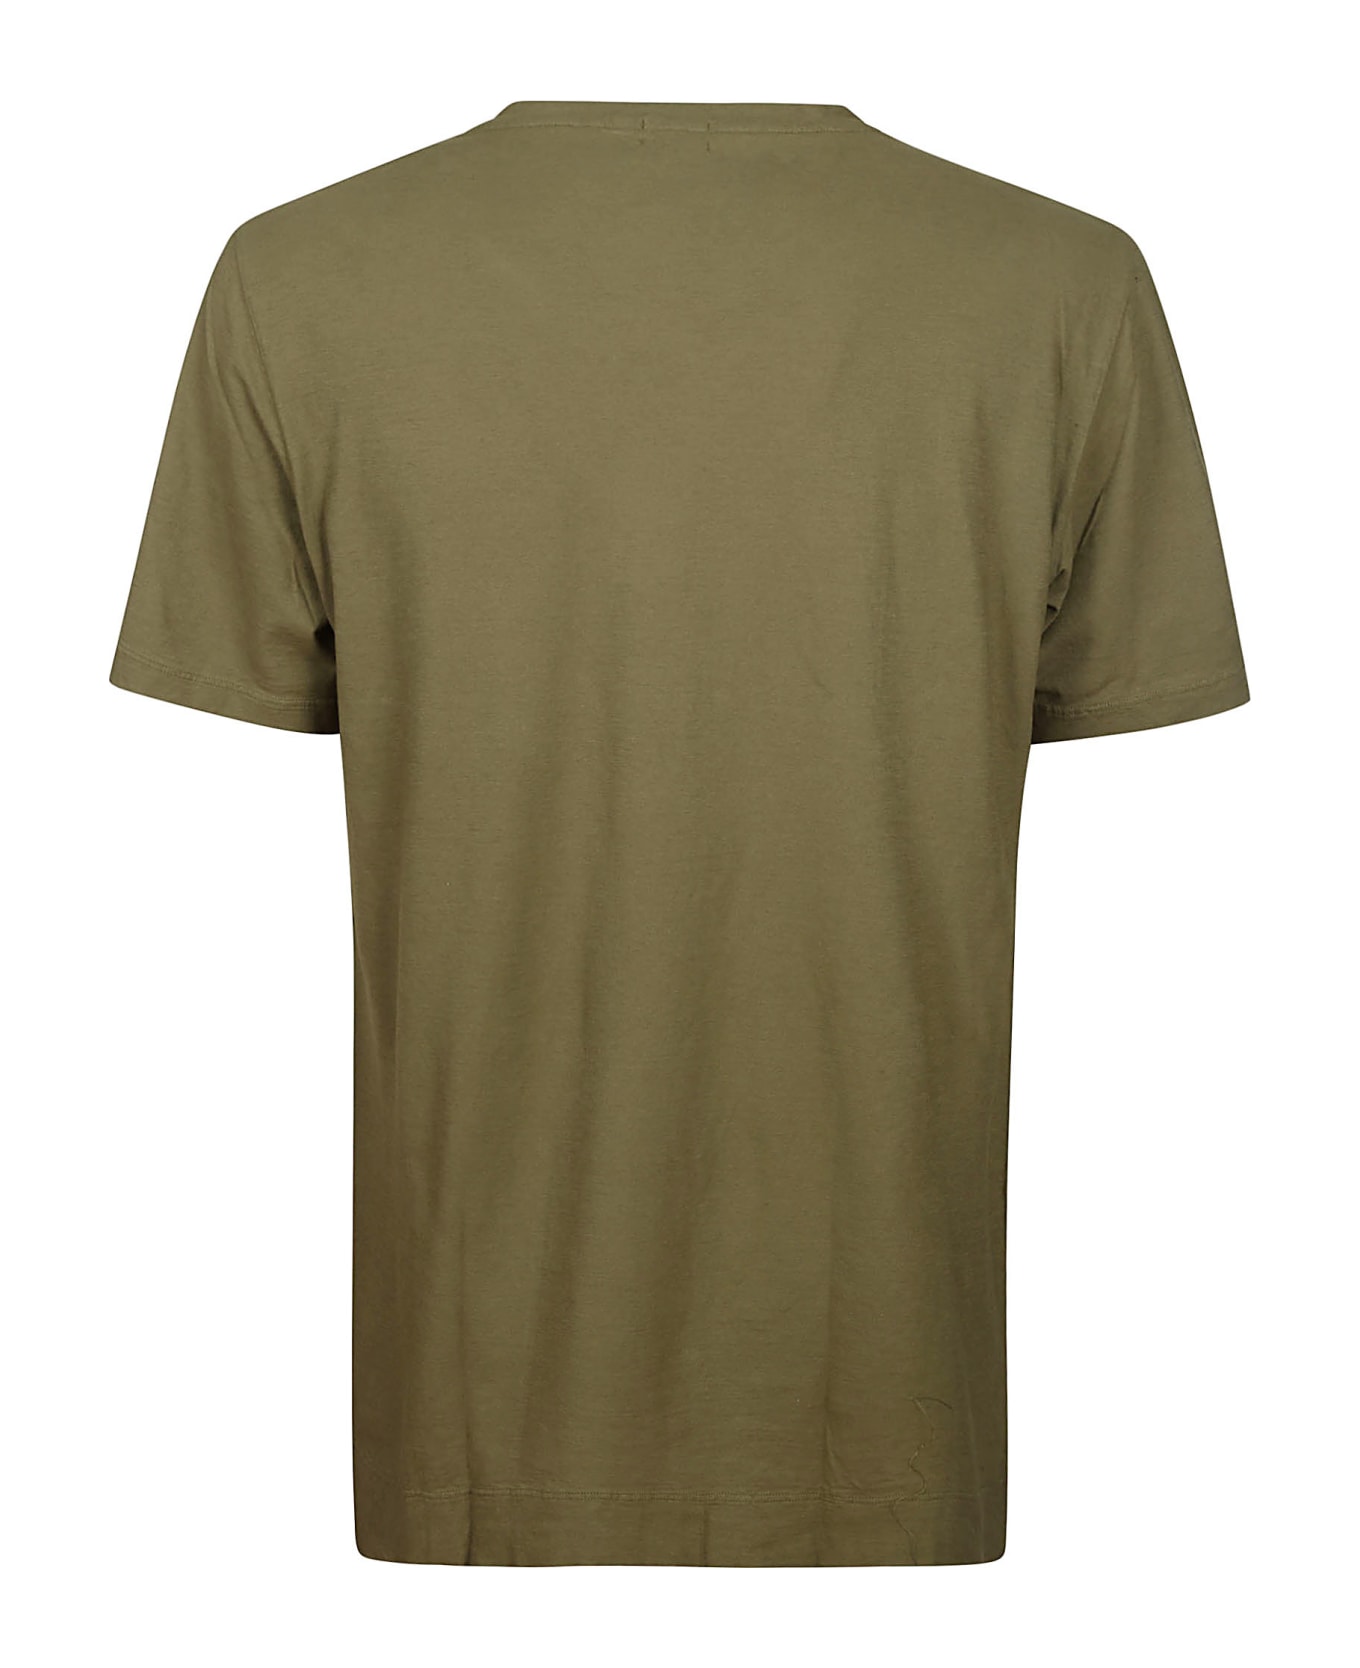 Massimo Alba T-shirt - Green Desert シャツ